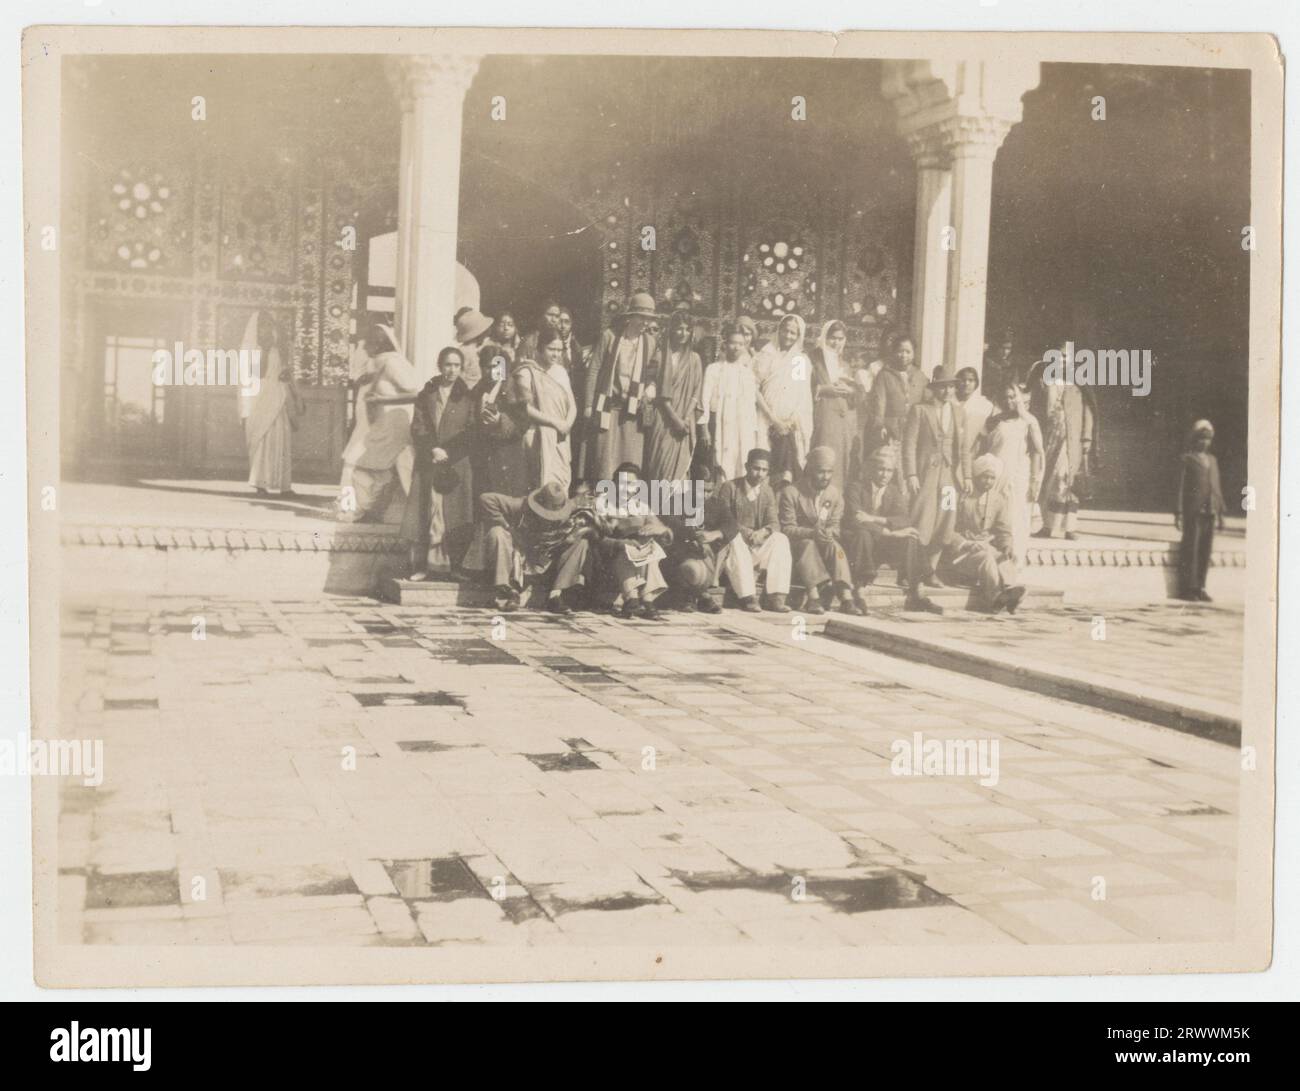 Große Besuchergruppe auf Stufen vor dem Spiegeleingang. Bildunterschrift lautet: 30 - Party of Visitors (GC-Studenten?) Lahore Fort, c 1932 - 33 GC ist die Abkürzung für Government College. Stockfoto